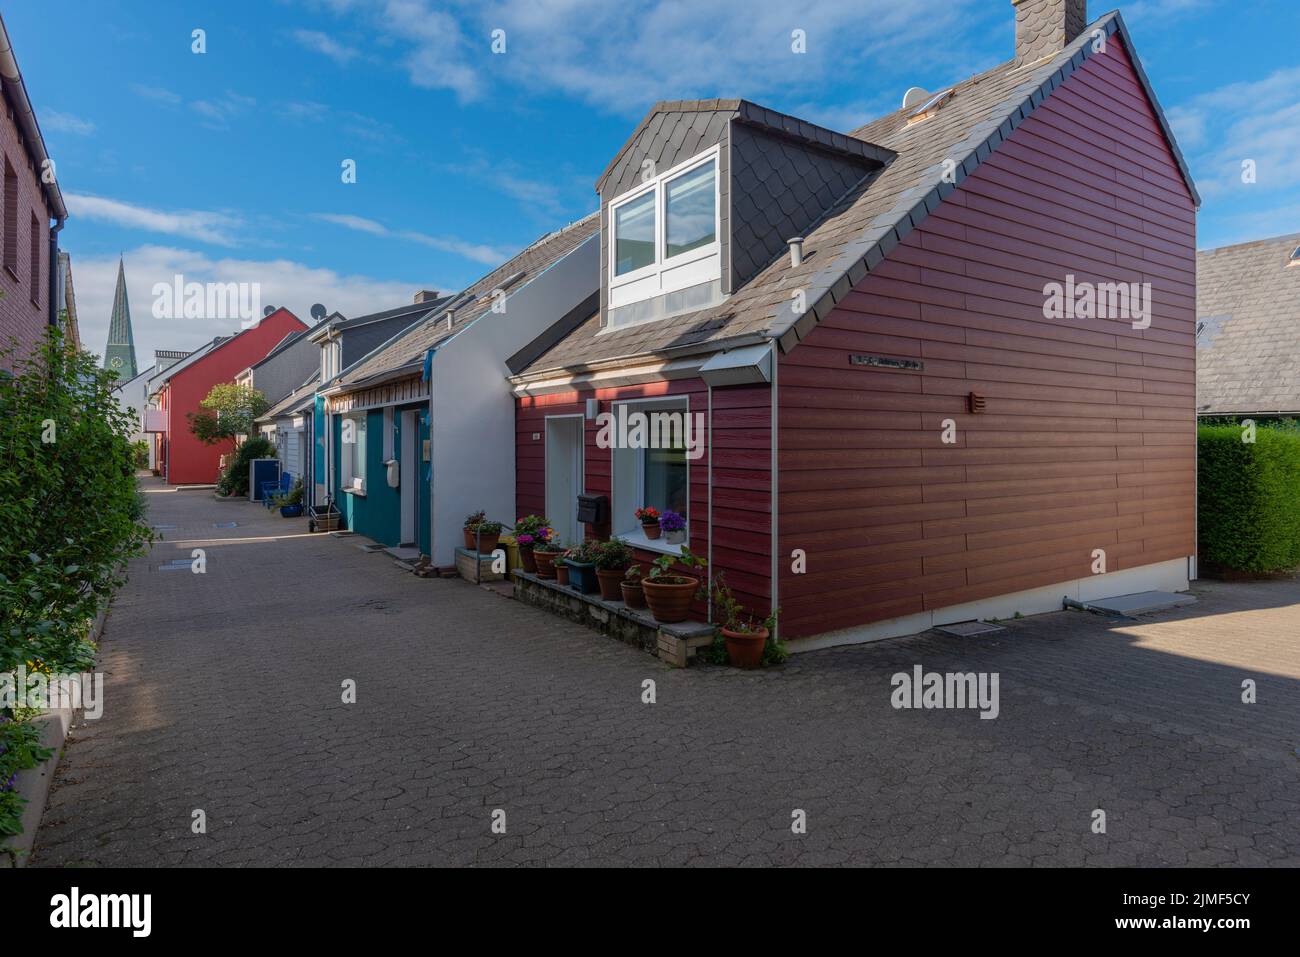 Architecture typique avec des couleurs de terre et des gables asymétriques dans le Haut-pays de l'île de la Mer du Nord Heligoland, Schleswig-Holstein, Allemagne du Nord Banque D'Images